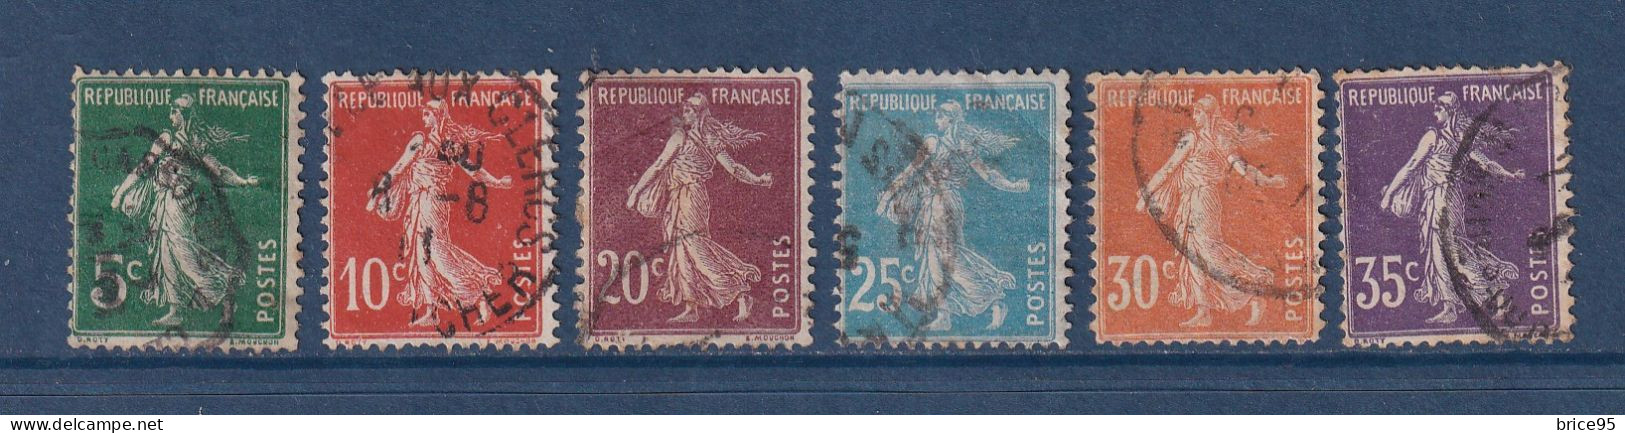 France - YT N° 137 à 142 - Oblitéré - 1907 - Oblitérés